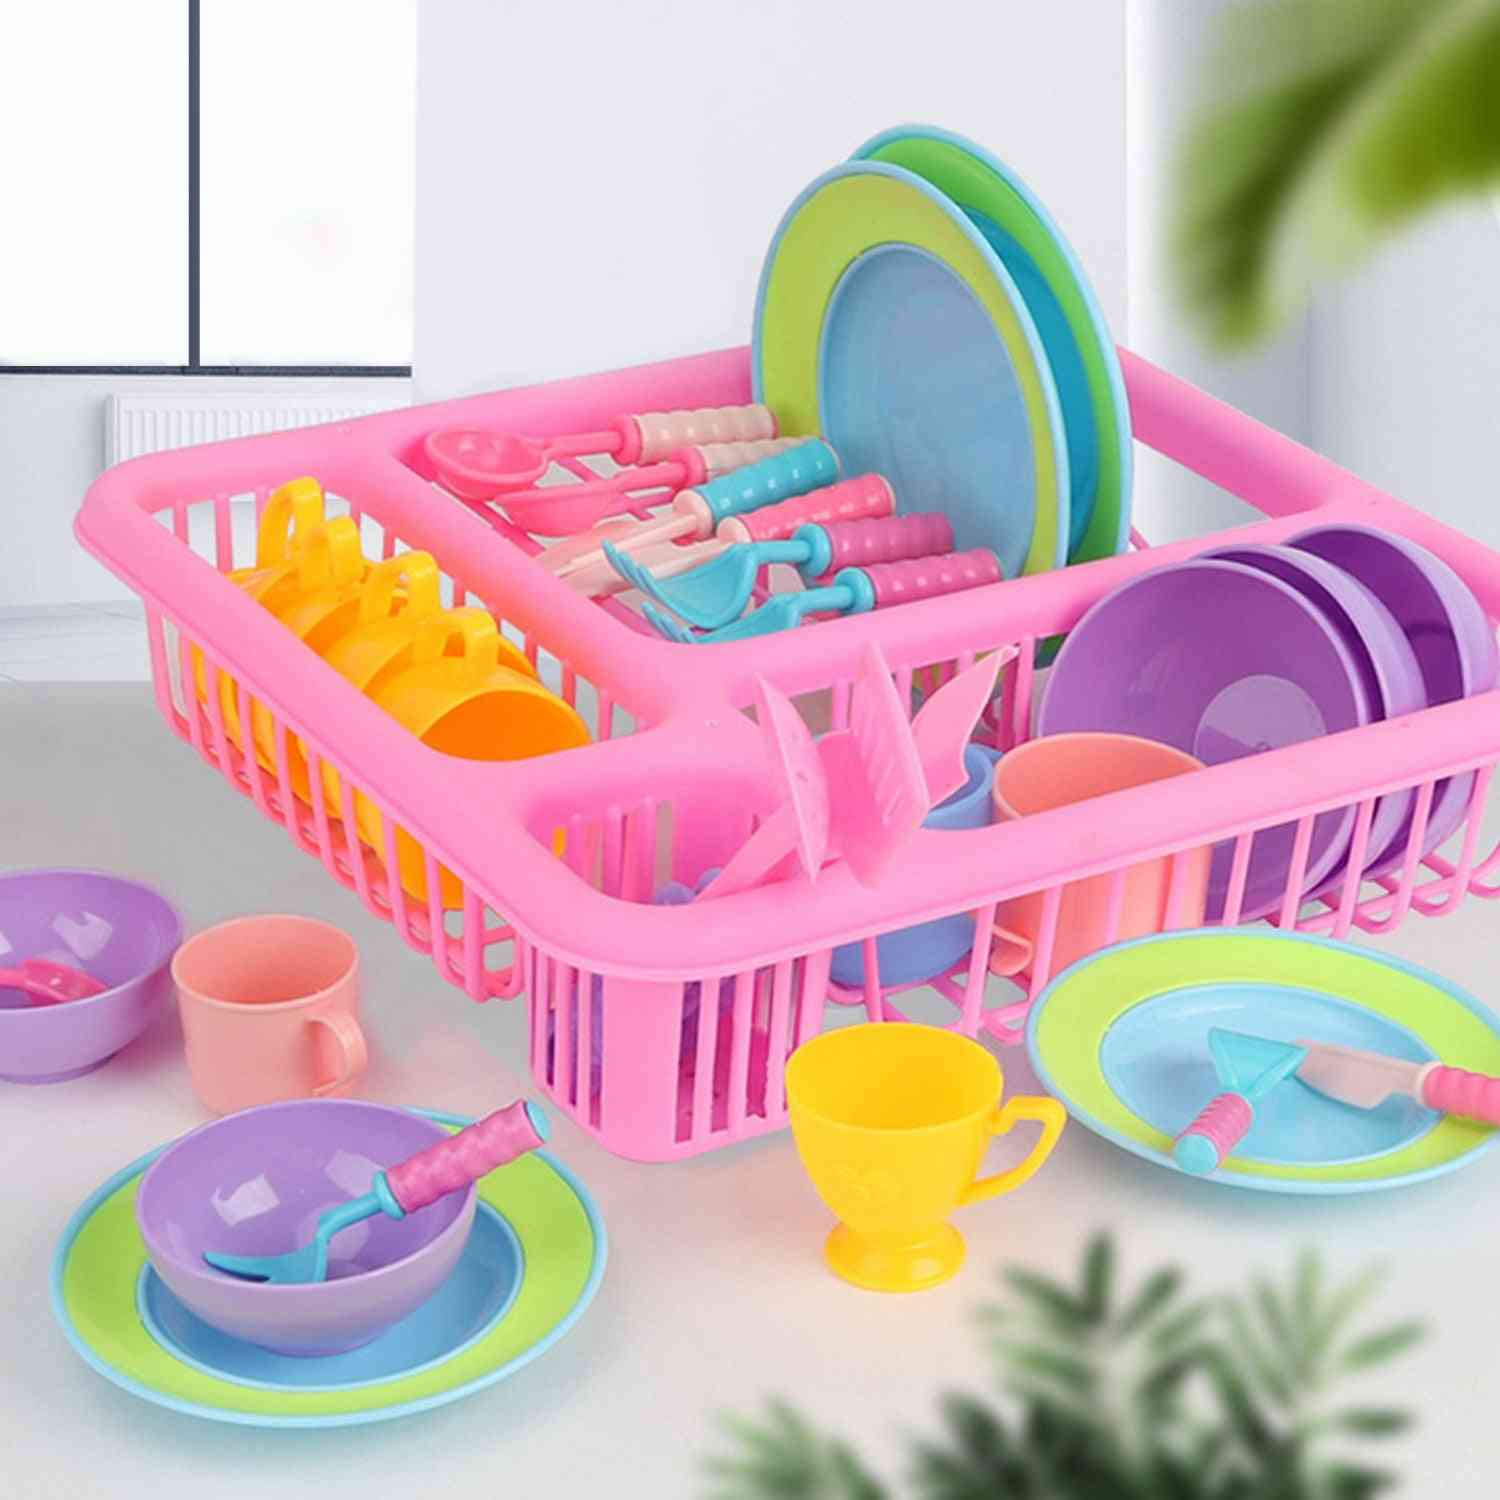 Vaisselle vaisselle assiettes / bols / tasses / couteau / fourchette cuillère / ustensiles de cuisine égouttoir de cuisine / cuisson sèche grille outil jouet pour enfants